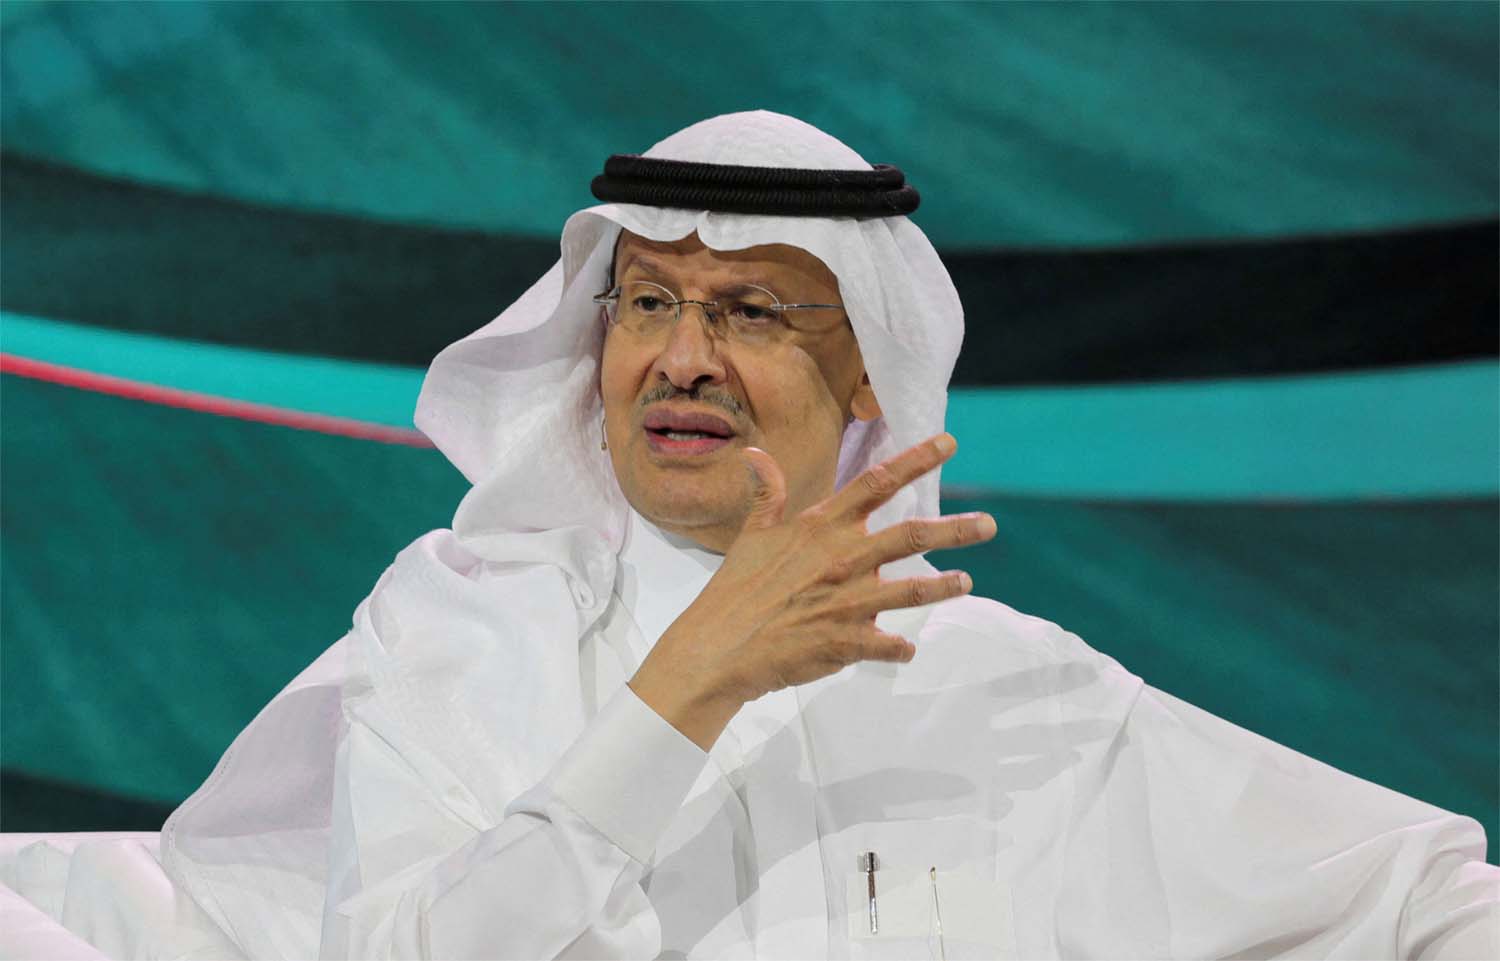 Saudi energy minister Prince Abdulaziz bin Salman